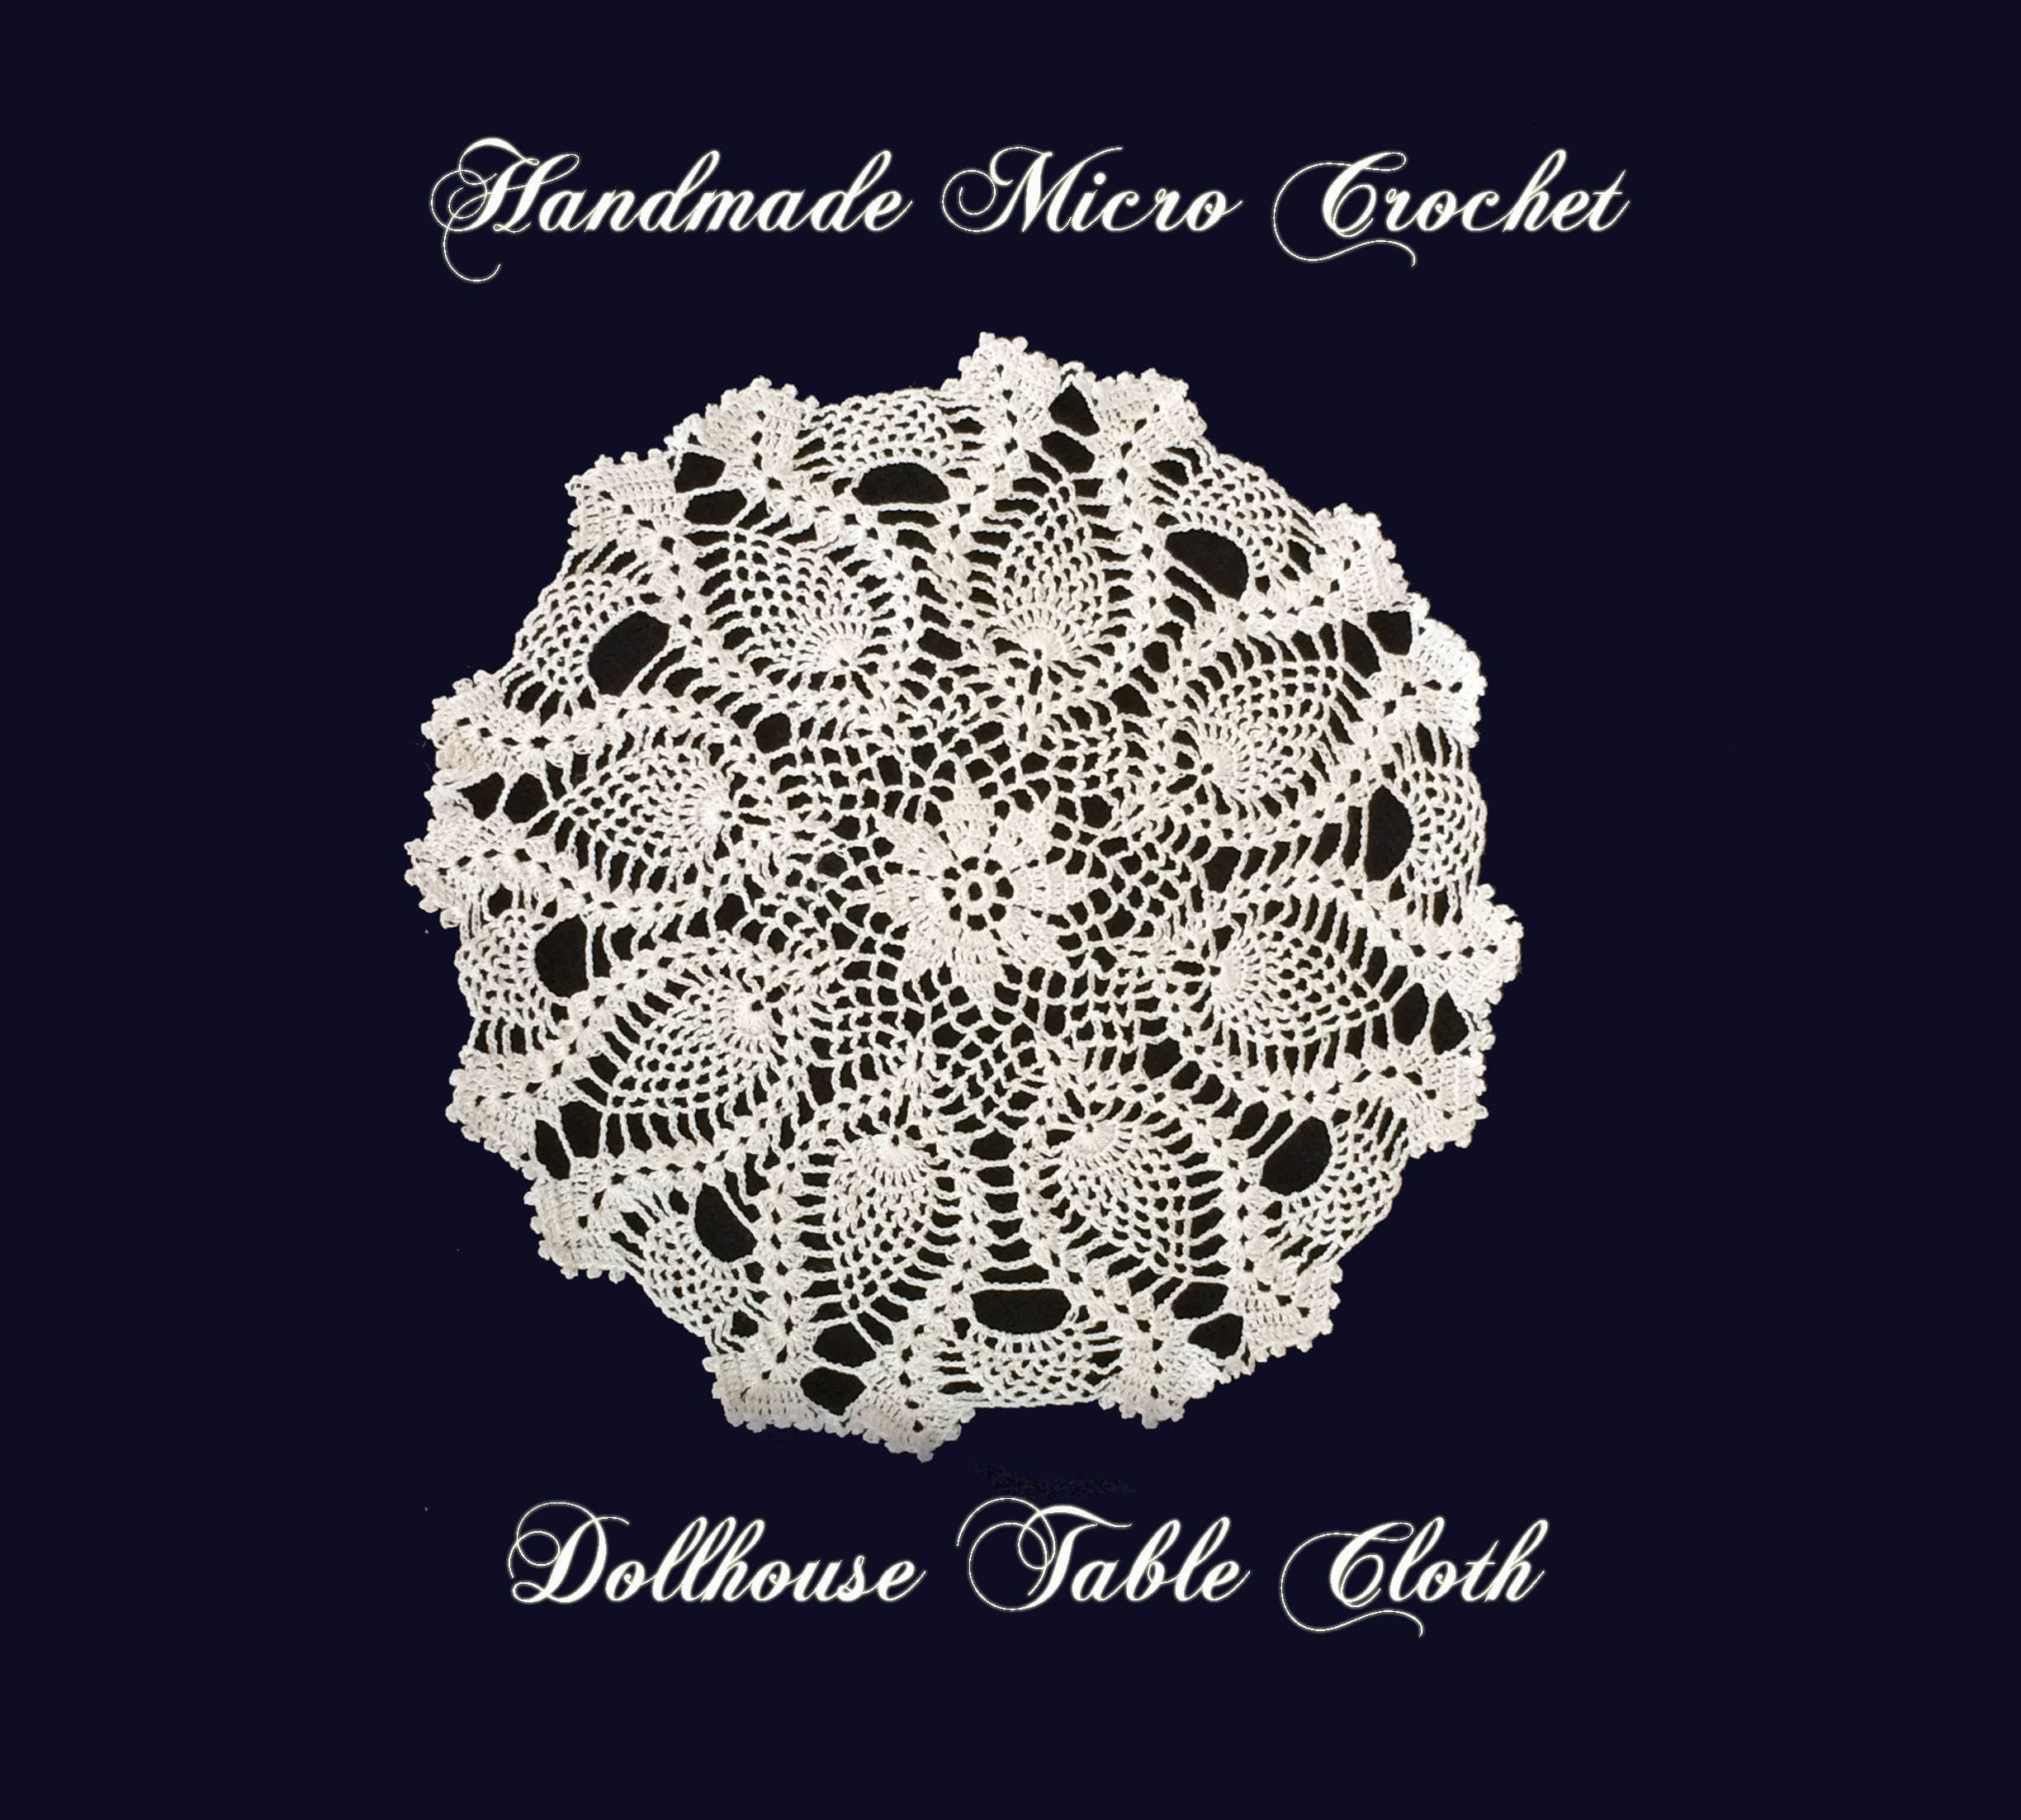 Handmade Micro Crochet Dollhouse Table Cloth-5 1/2 inch Mini Table Cloth- Miniature Crochet Pineapple Doily